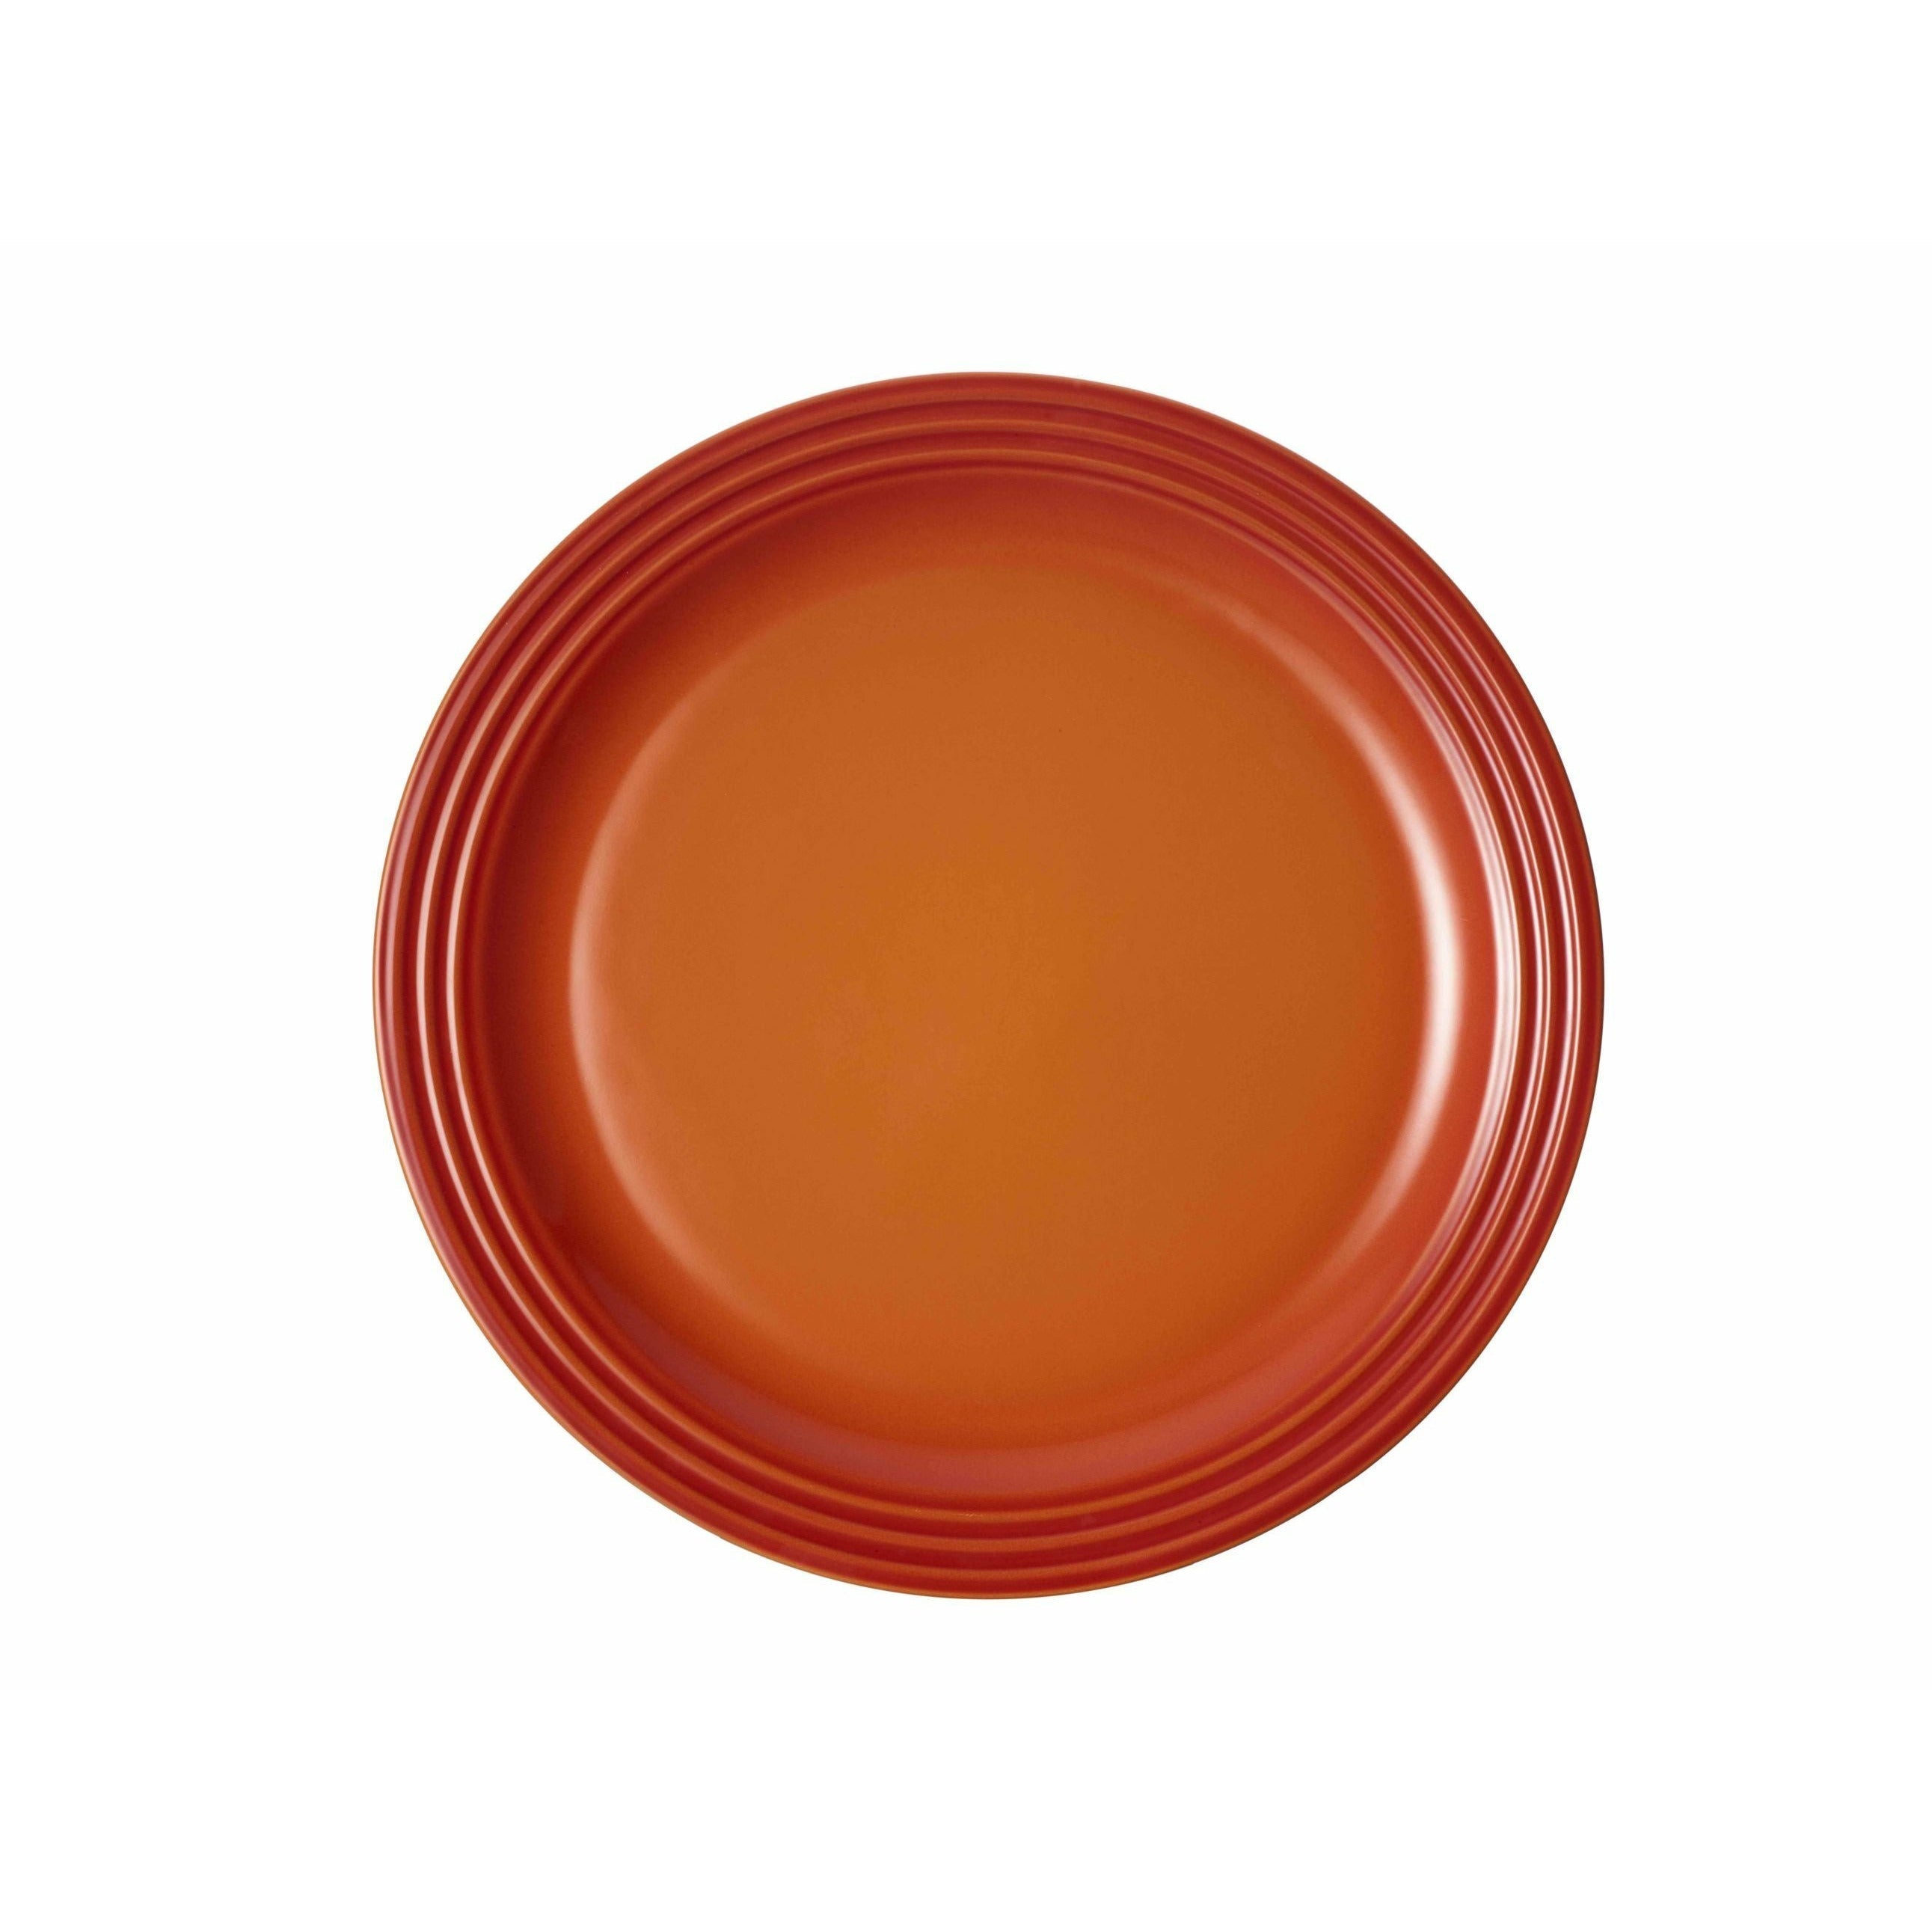 Piatto da pranzo firma Le Creuset 27 cm, rosso forno